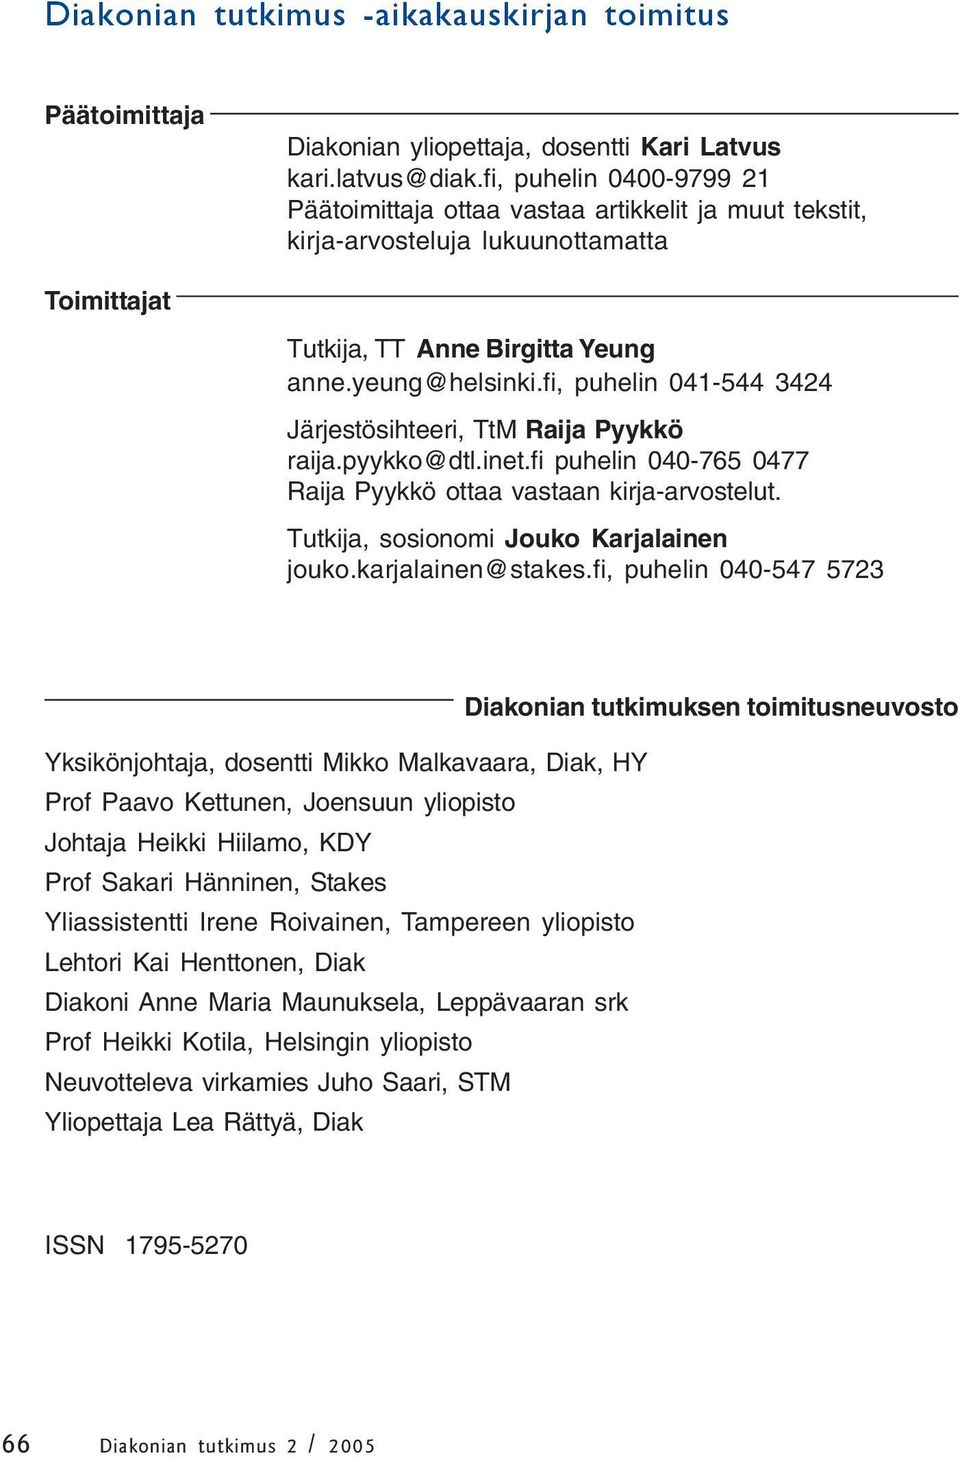 fi, puhelin 041-544 3424 Järjestösihteeri, TtM Raija Pyykkö raija.pyykko@dtl.inet.fi puhelin 040-765 0477 Raija Pyykkö ottaa vastaan kirja-arvostelut. Tutkija, sosionomi Jouko Karjalainen jouko.